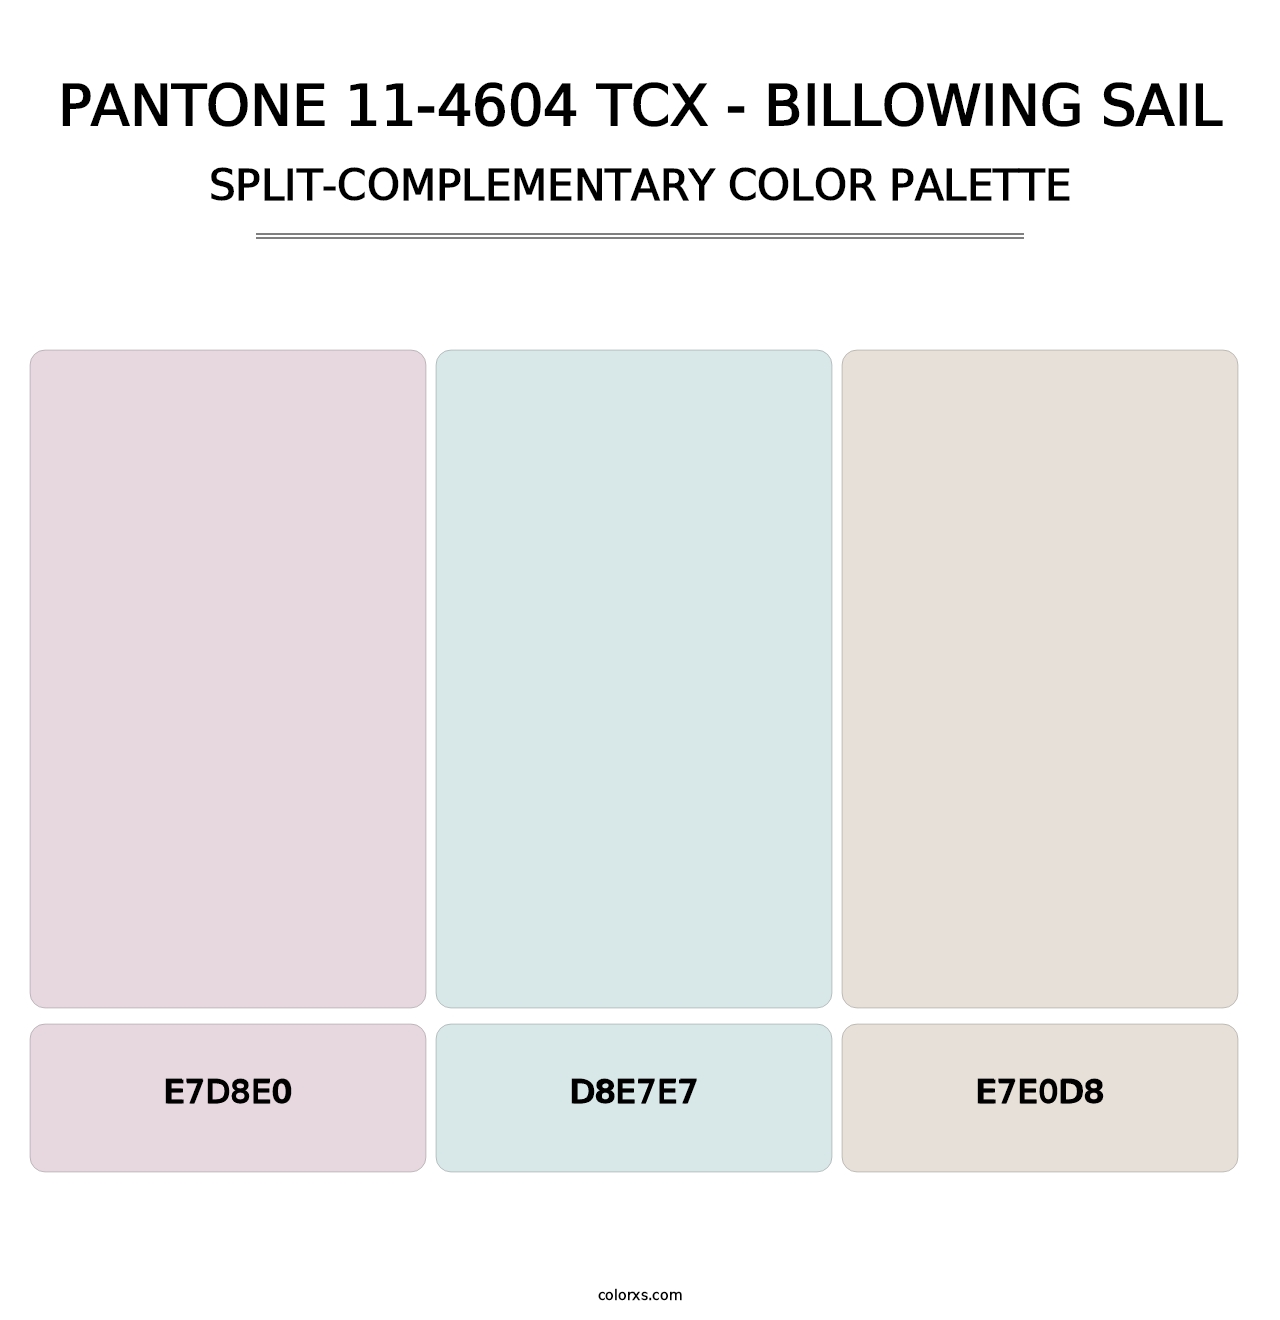 PANTONE 11-4604 TCX - Billowing Sail - Split-Complementary Color Palette